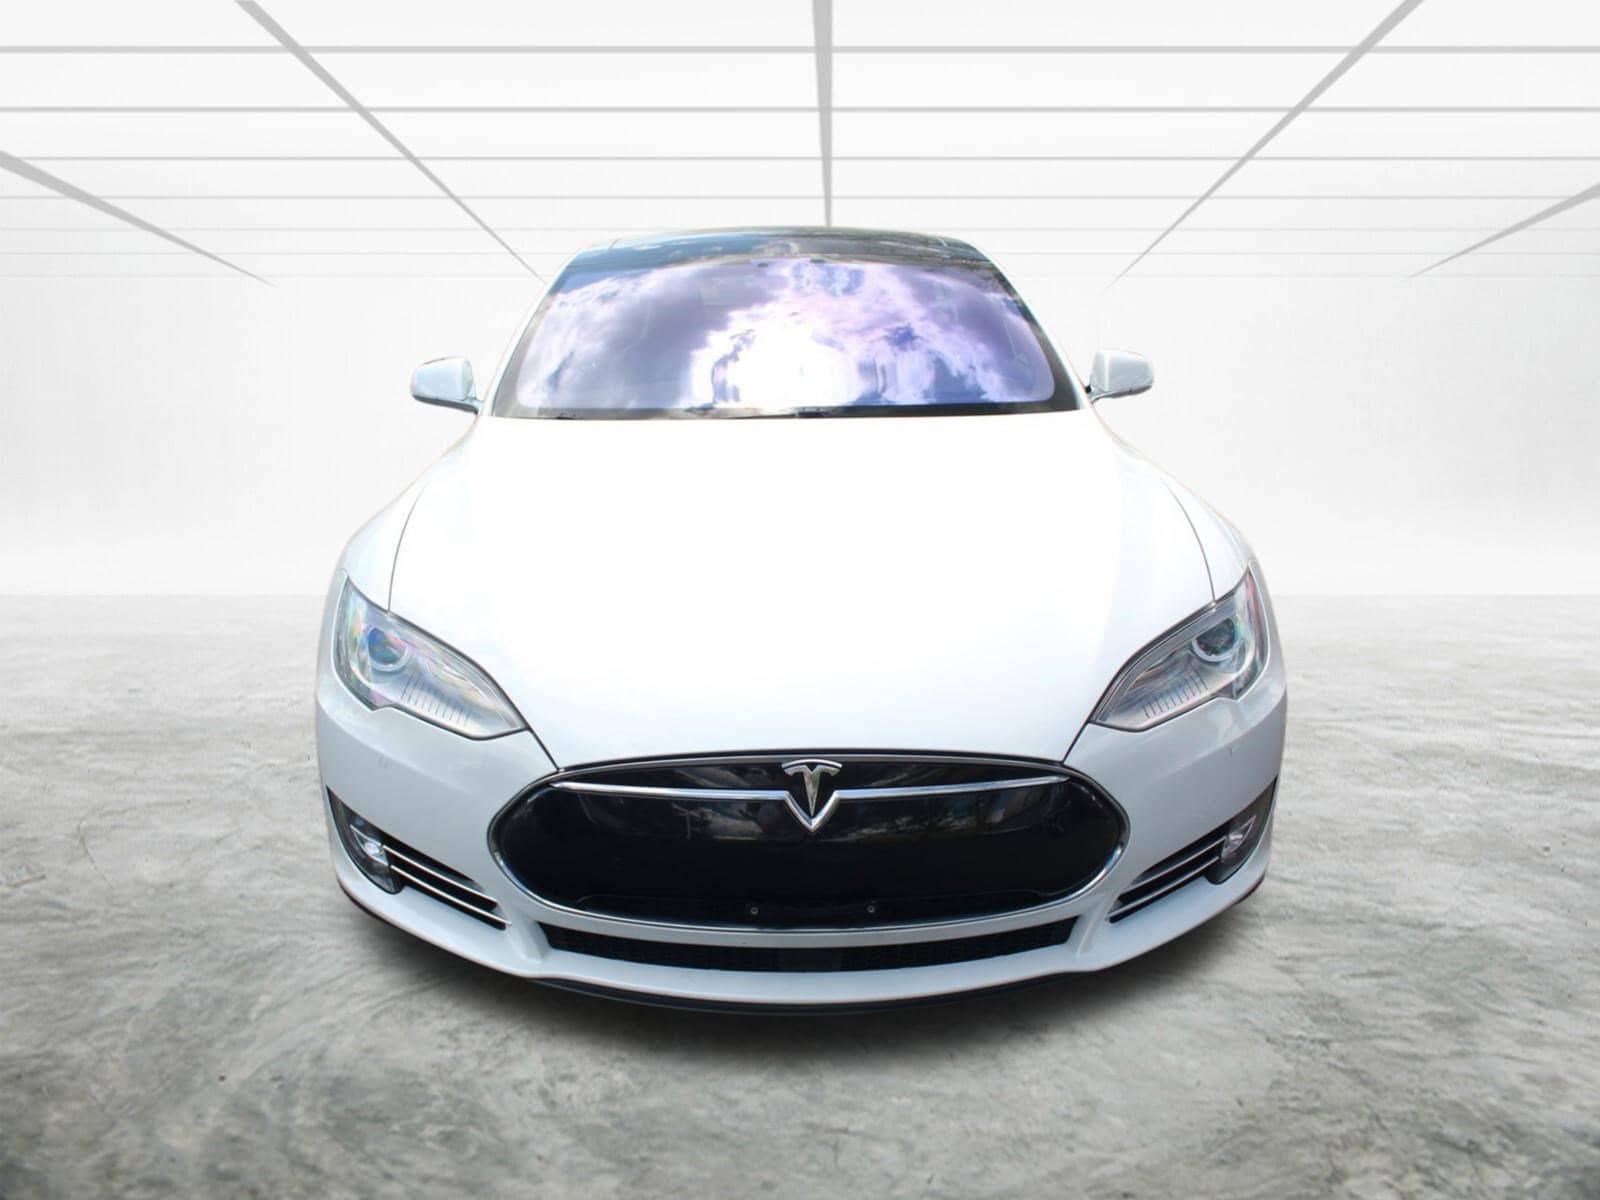 Used 2015 Tesla Model S 70D with VIN 5YJSA1S26FF087892 for sale in Alexandria, VA